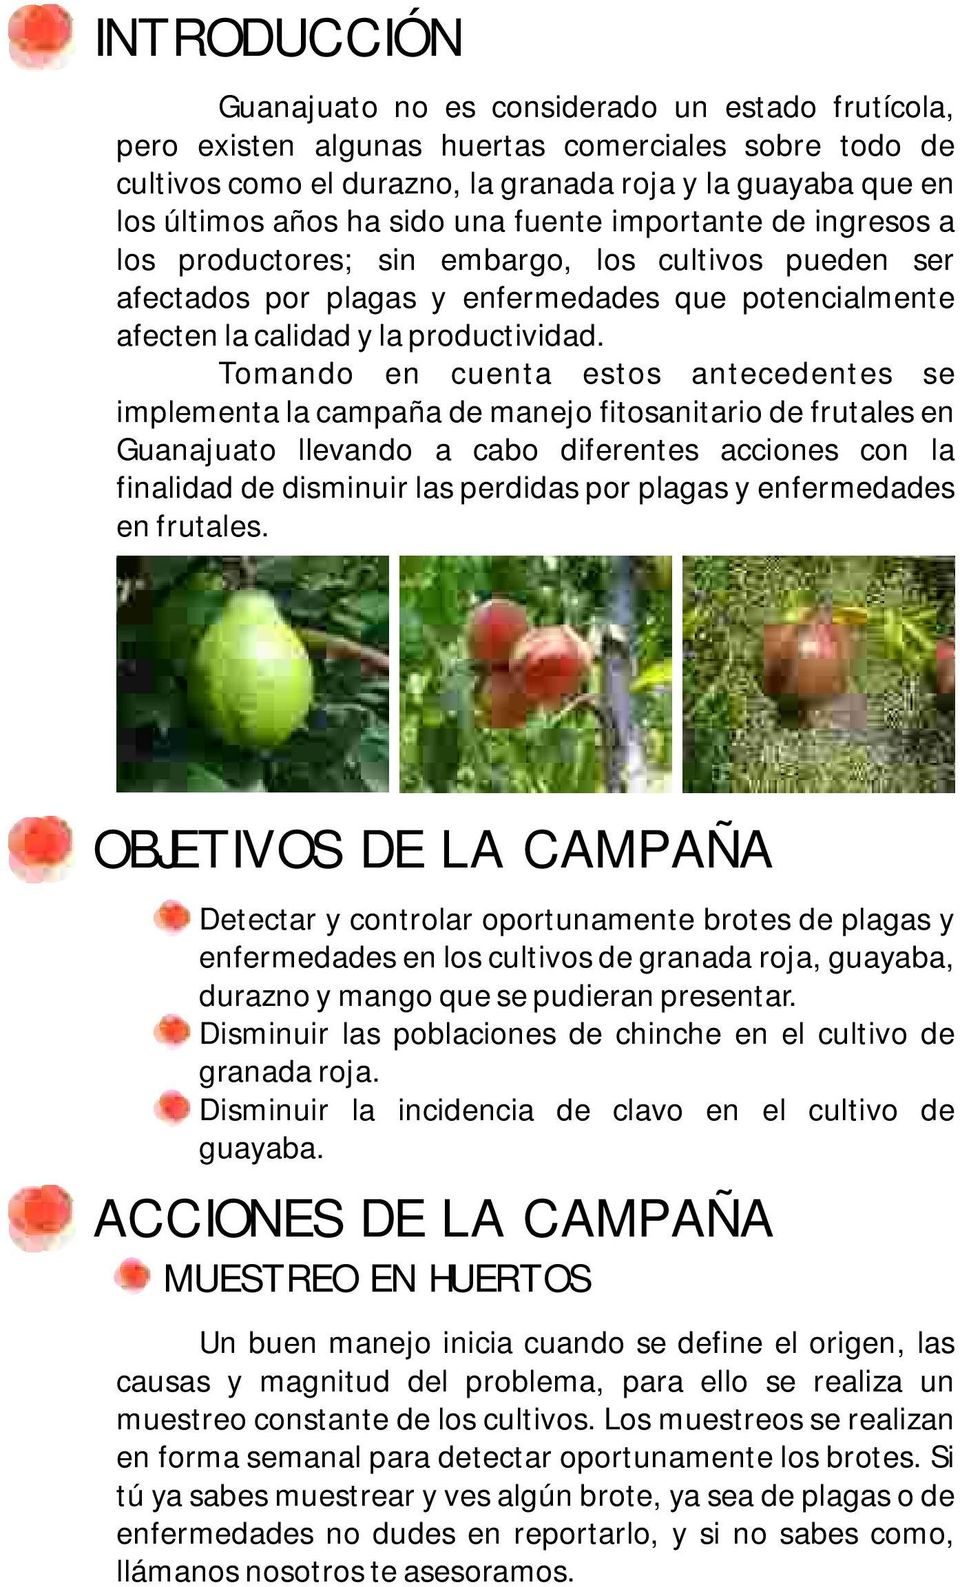 Tomando en cuenta estos antecedentes se implementa la campaña de manejo fitosanitario de frutales en Guanajuato llevando a cabo diferentes acciones con la finalidad de disminuir las perdidas por